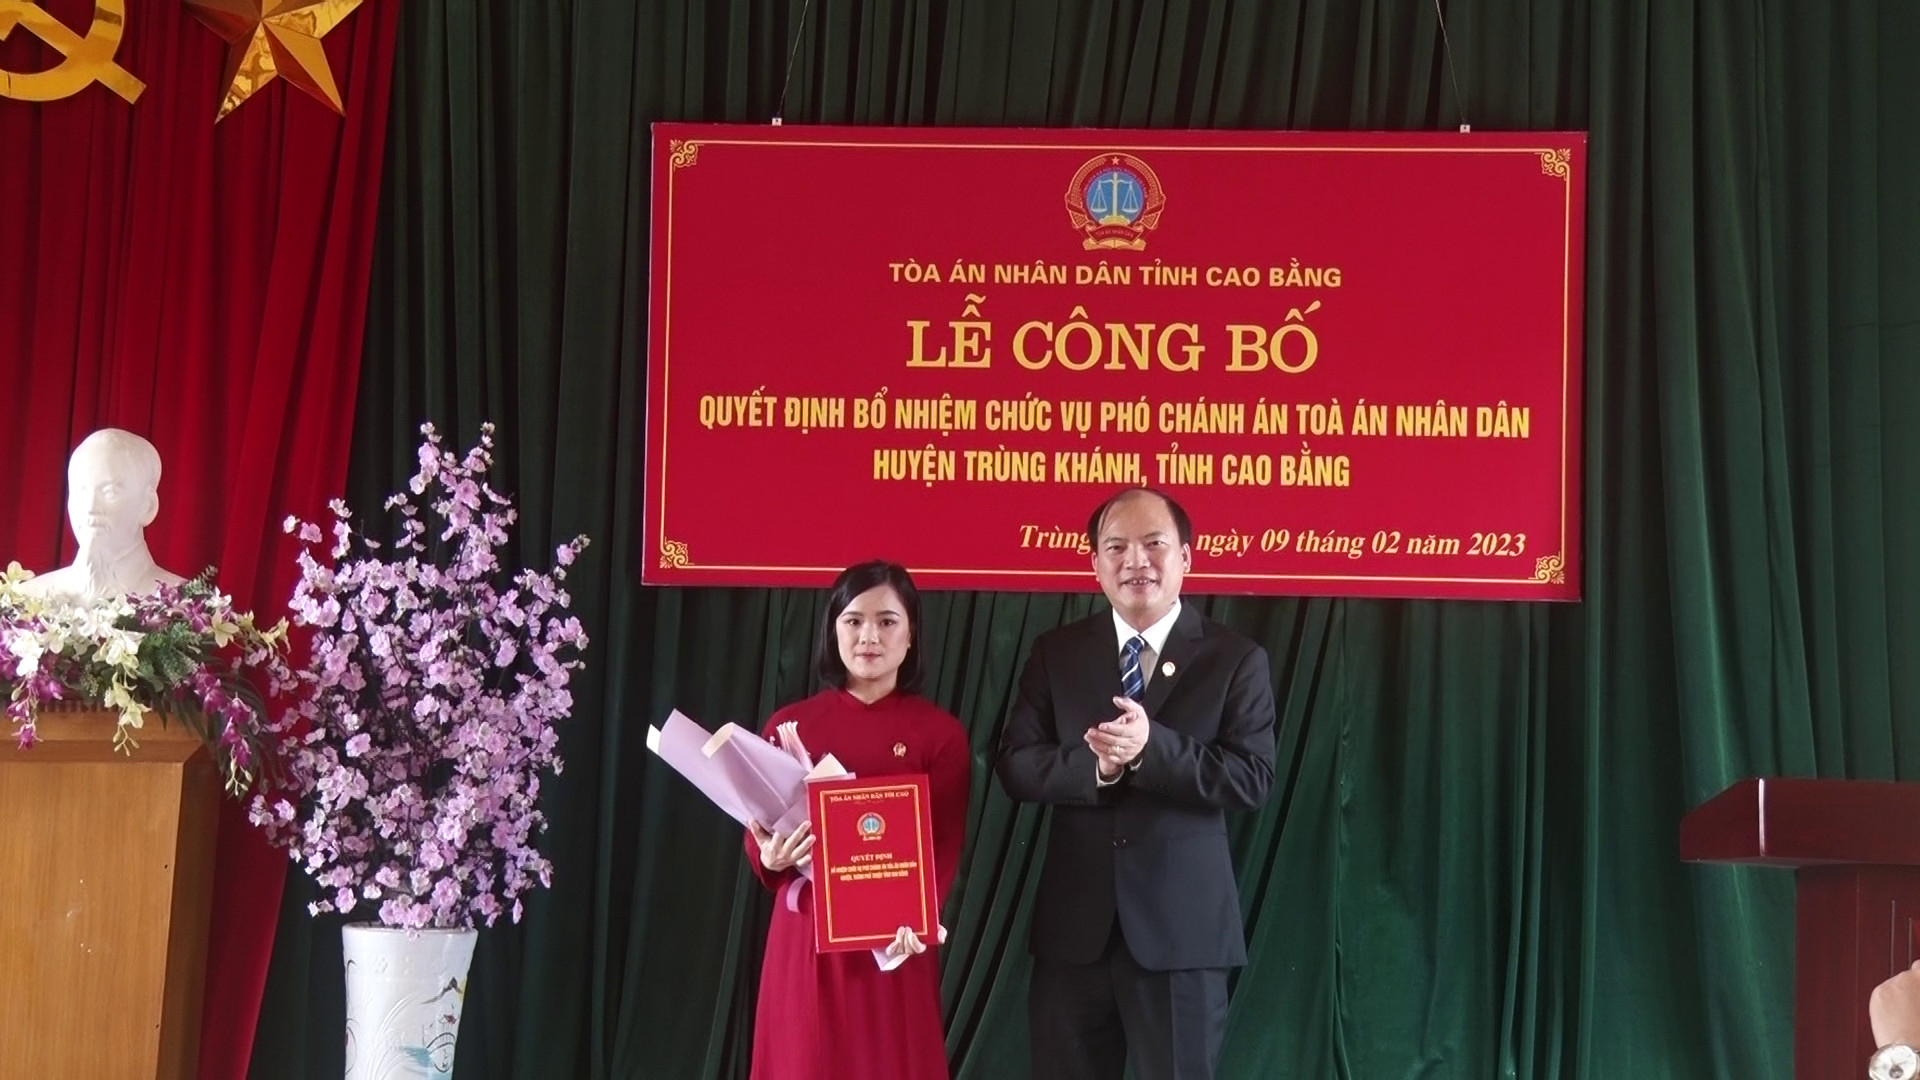 Trao quyết định bổ nhiệm chức vụ Phó chánh án TAND huyện Trùng Khánh